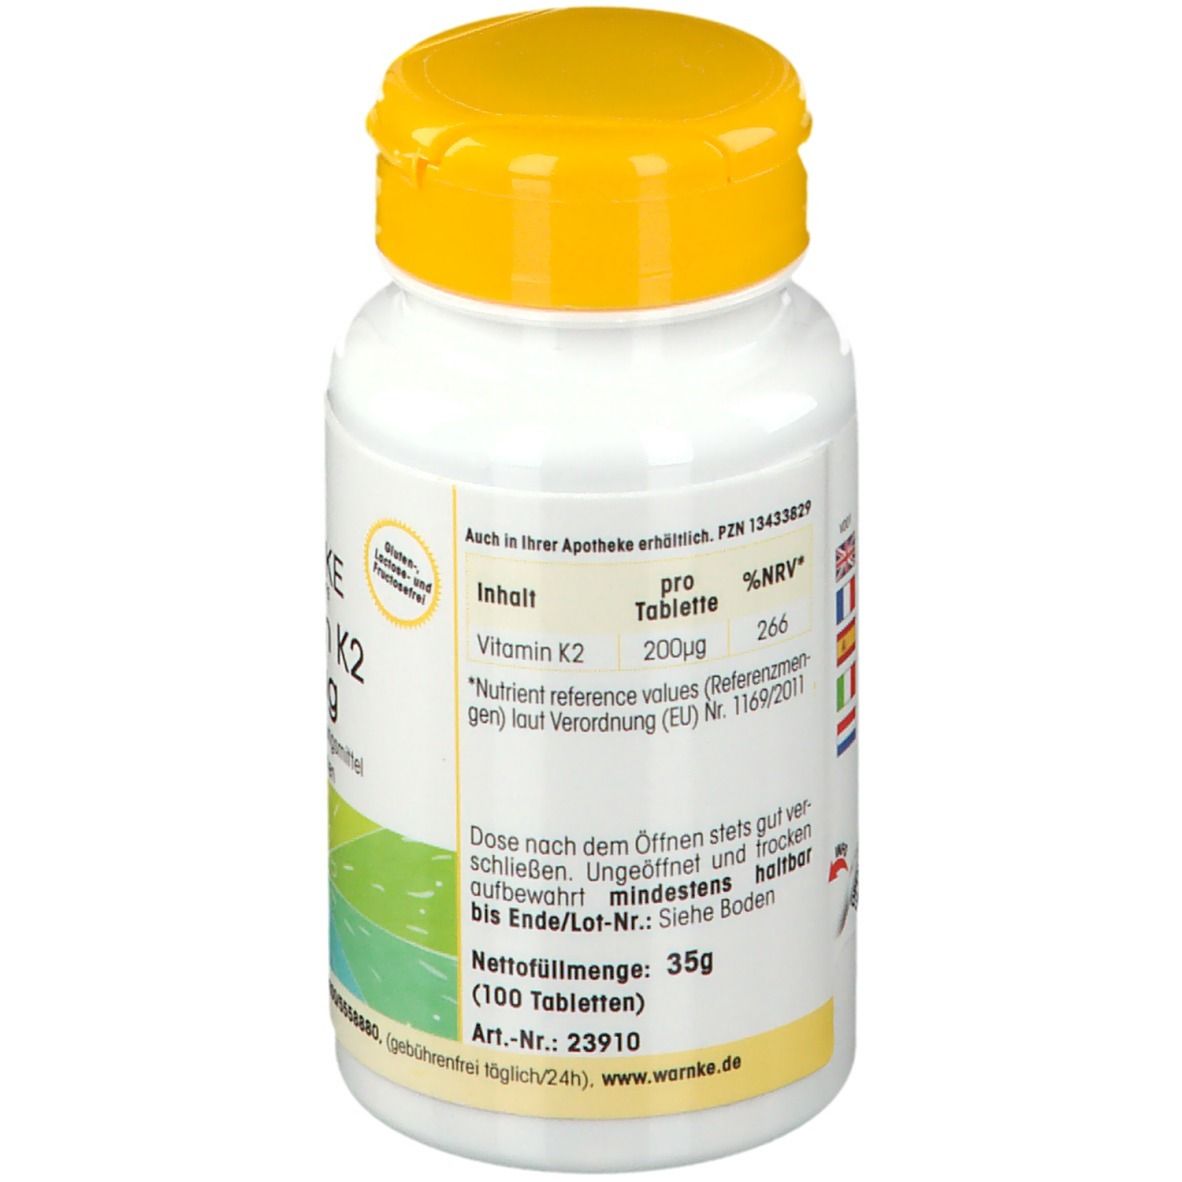  WARNKE Vitamin K2 200 µg